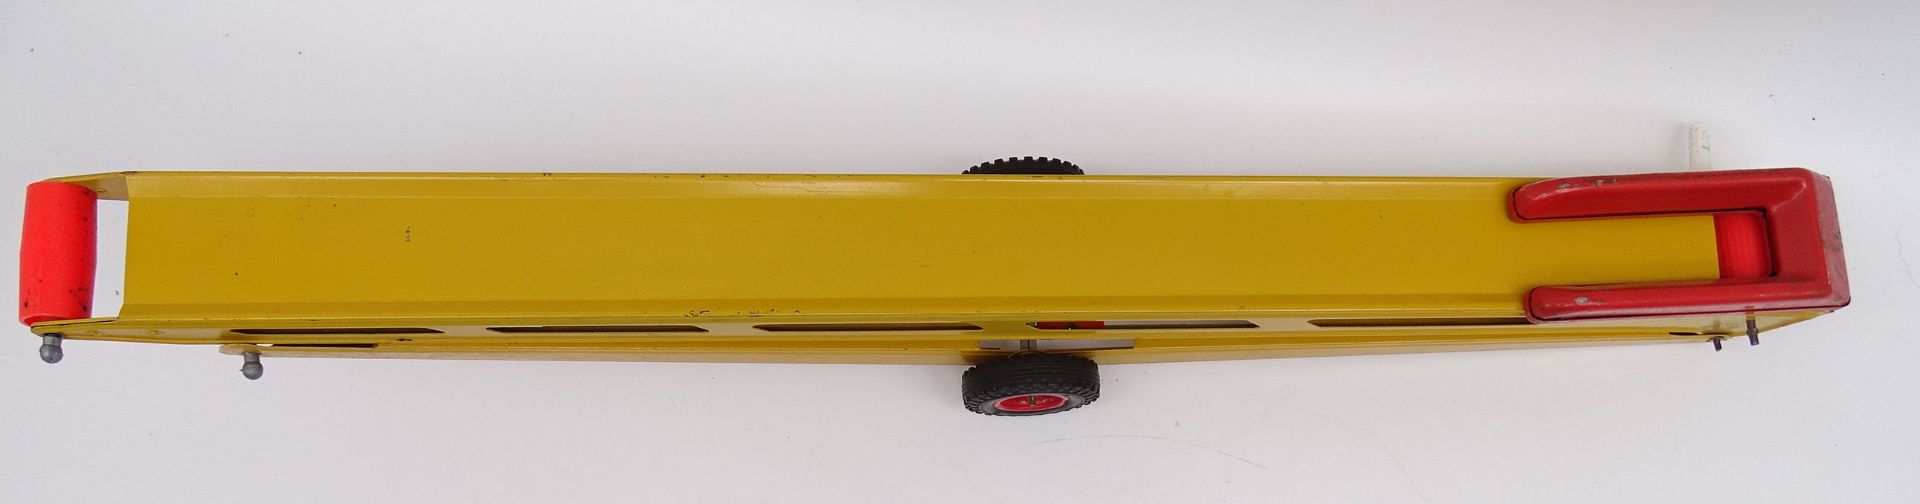 Gama Förderband, Blechspielzeug 60er-Jahre, L. 52 cm, mit Alters- und Gebrauchsspuren, Band nicht m - Bild 2 aus 5